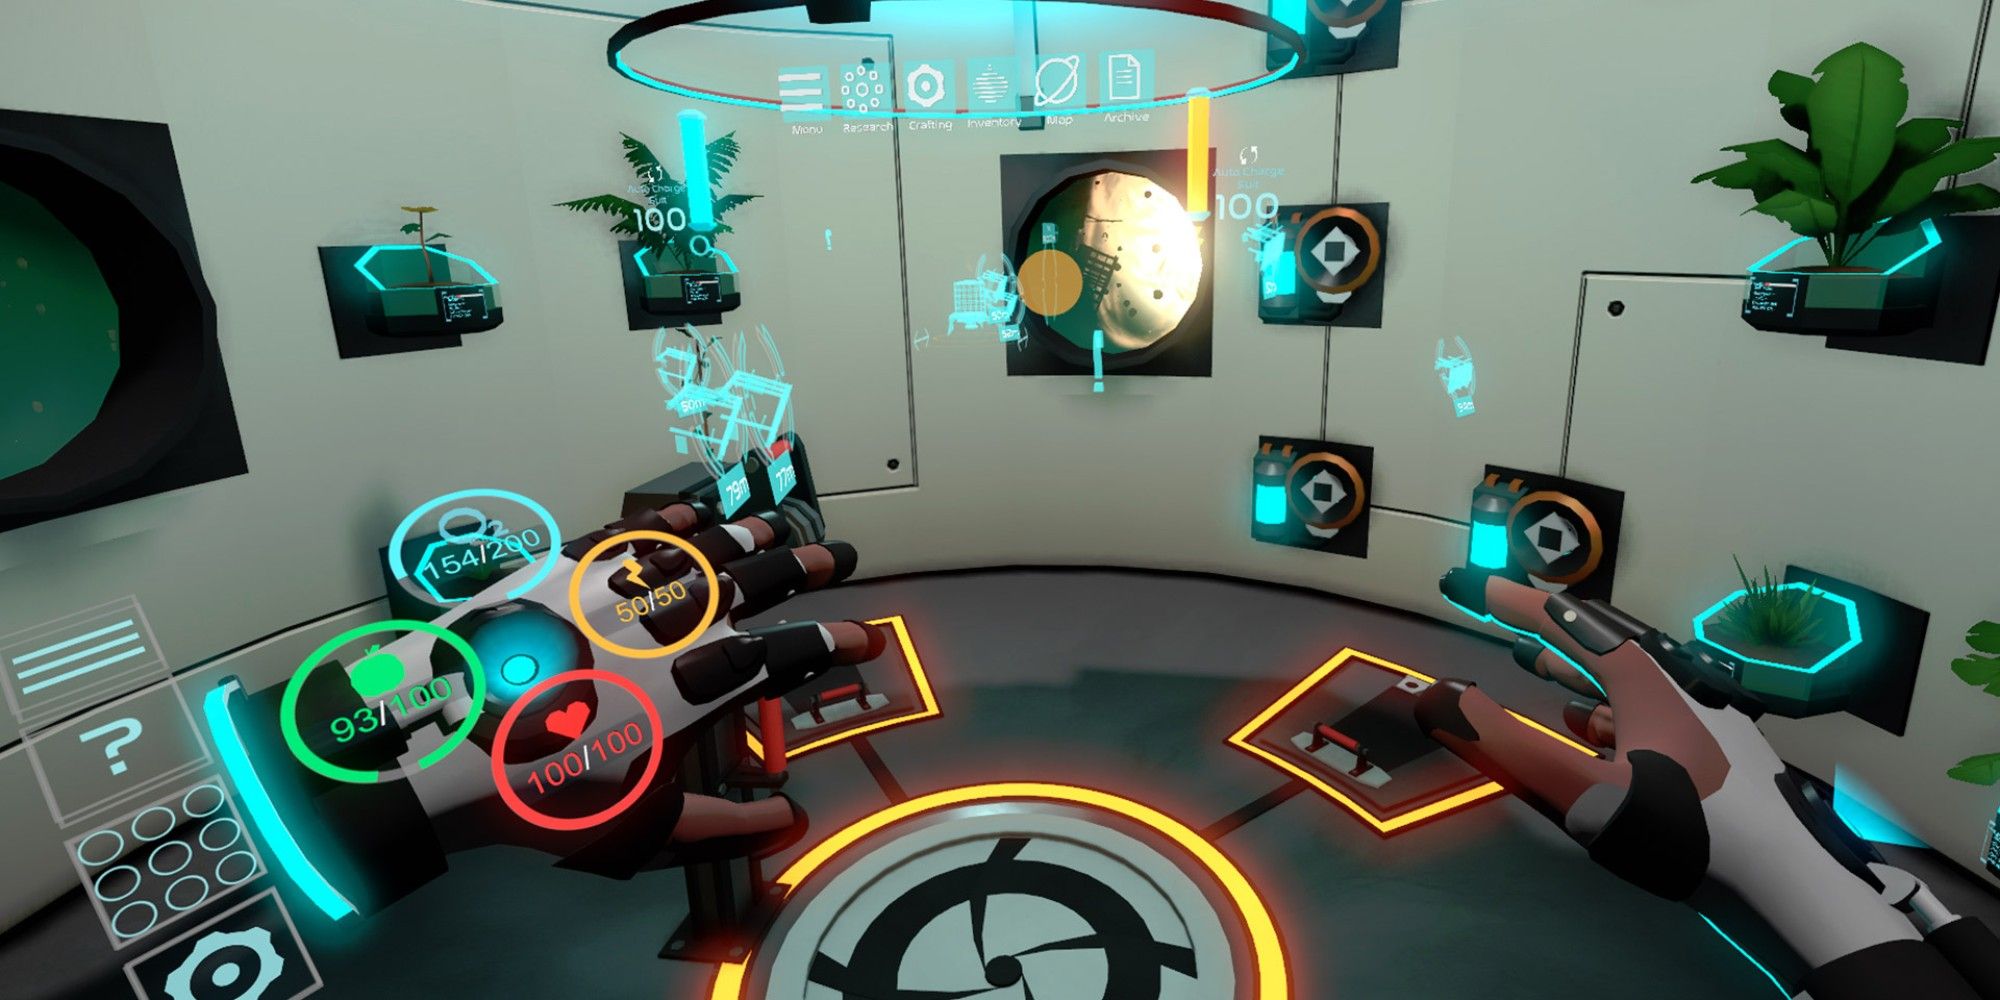 Star shelter in VR gameplay scene